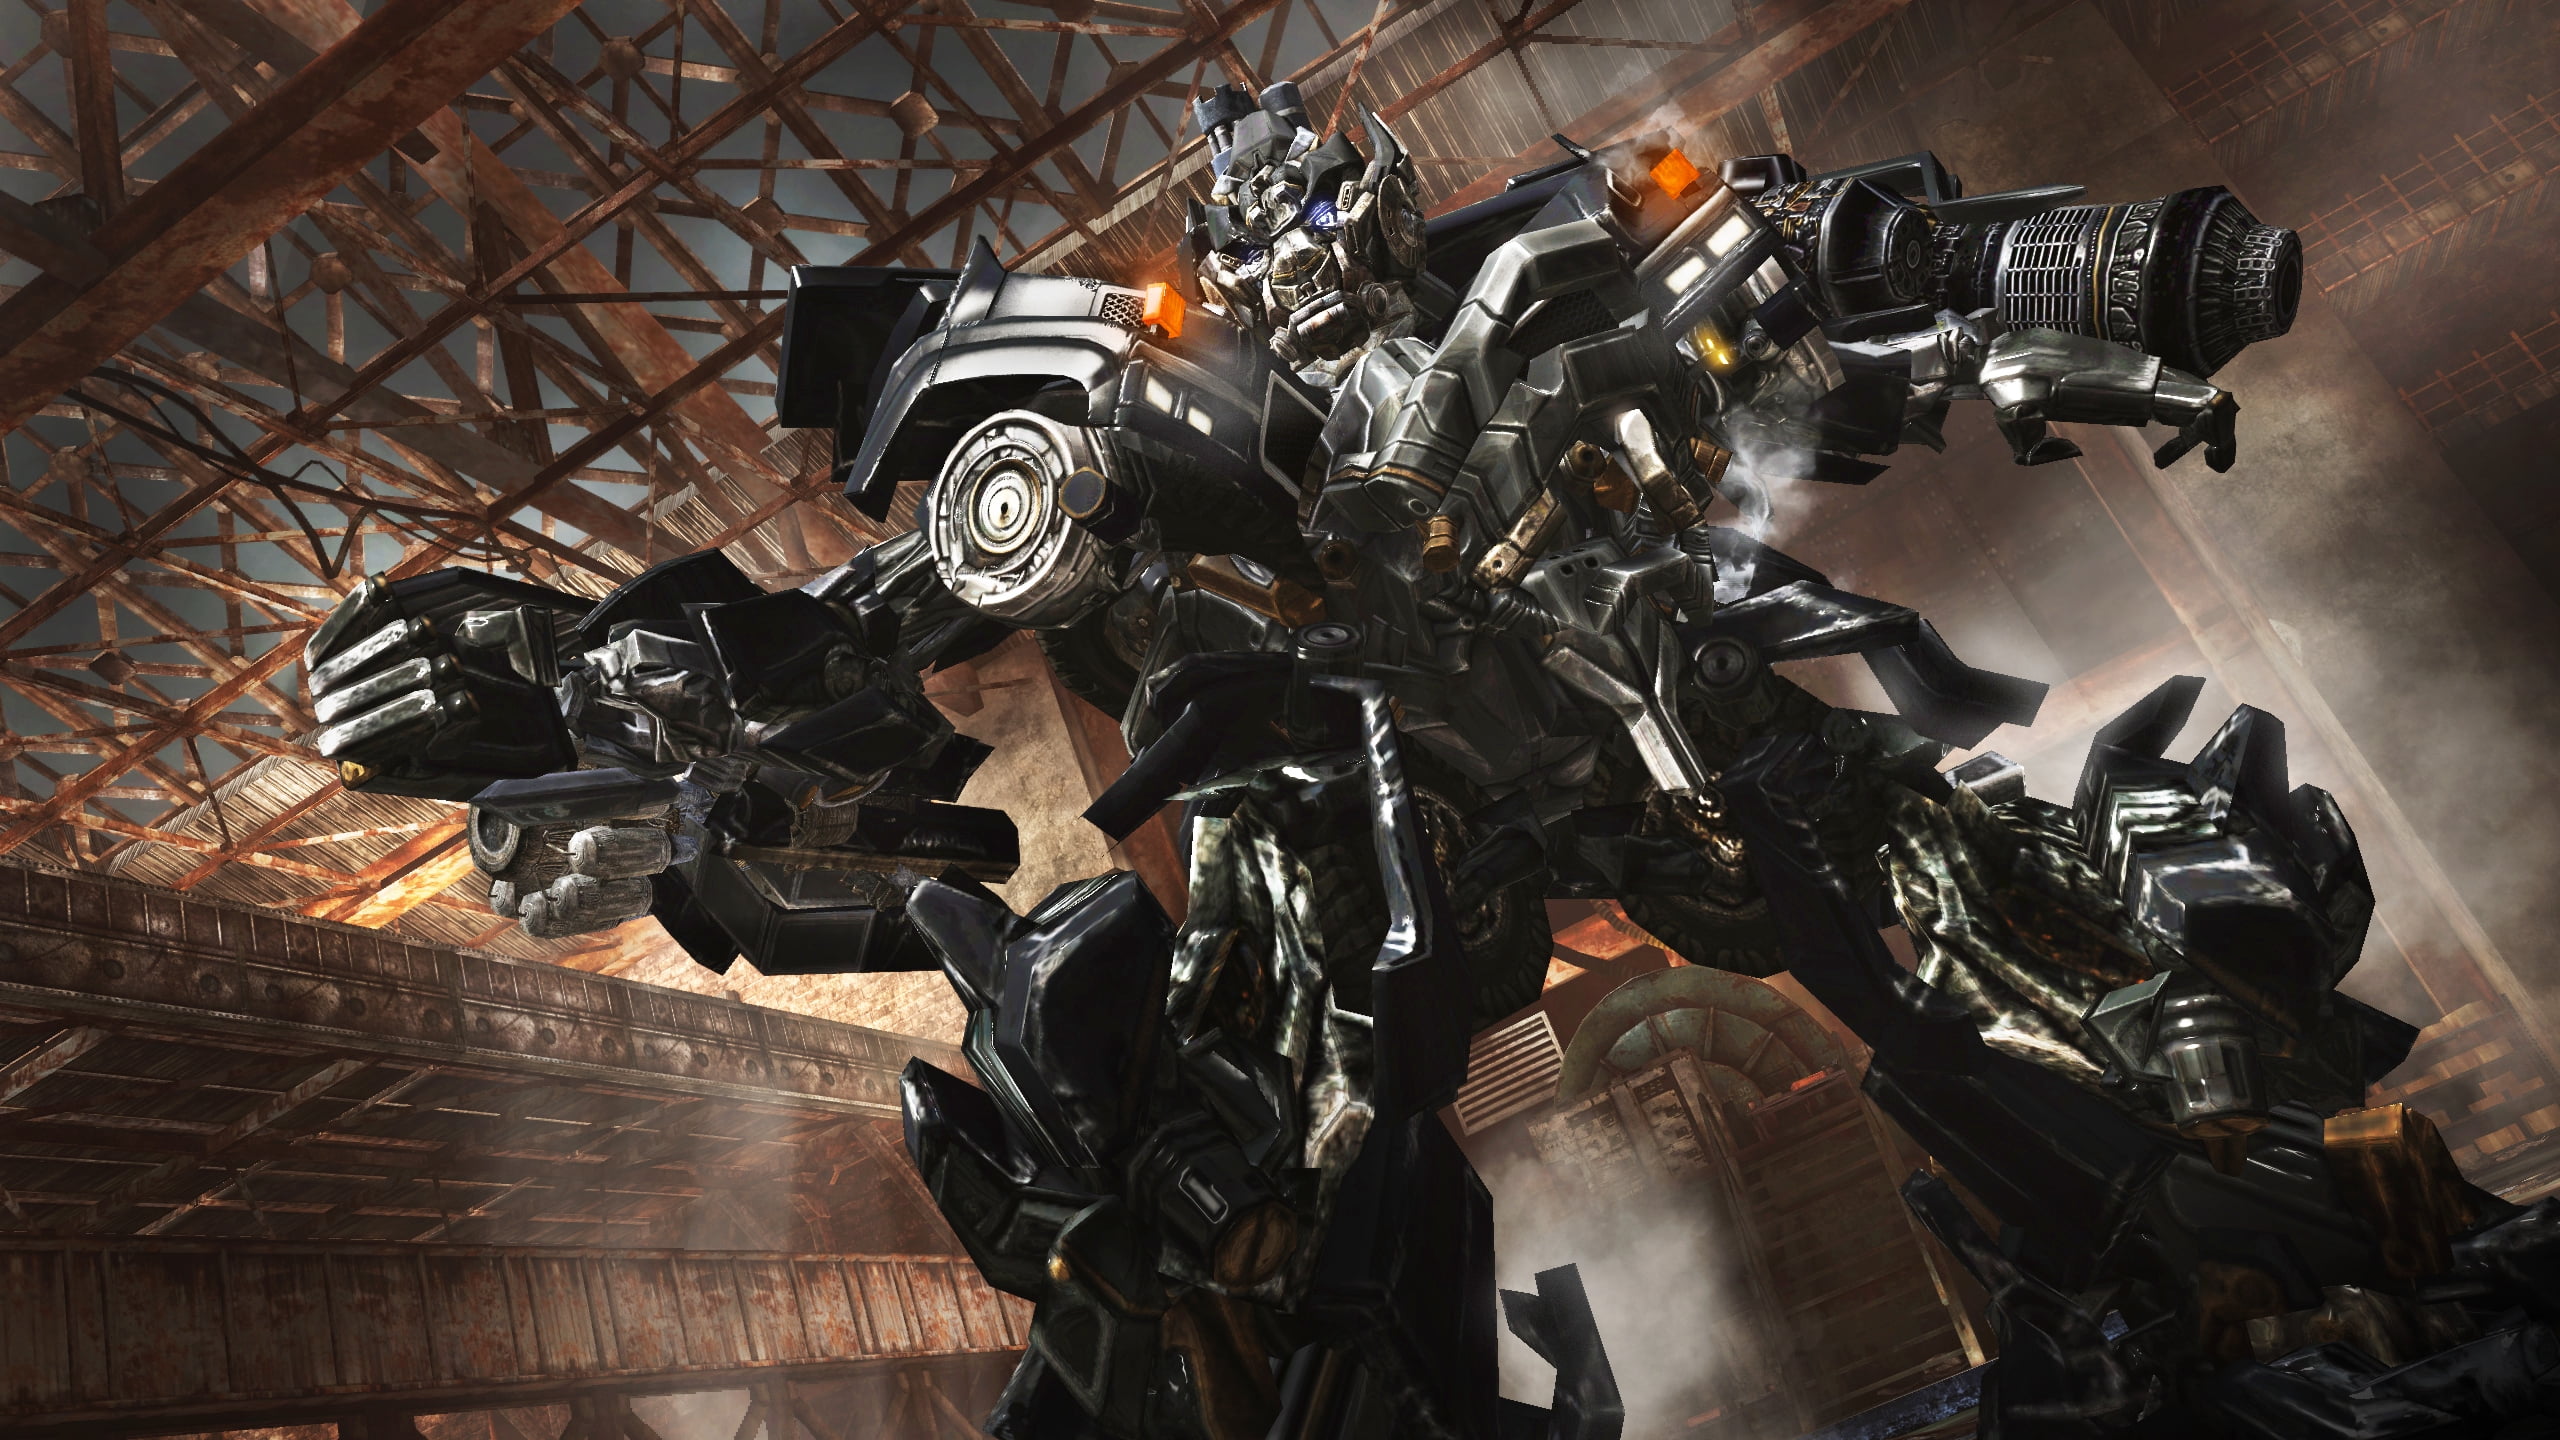 Jogo Transformers: Dark of the Moon - Xbox 360 em Promoção na